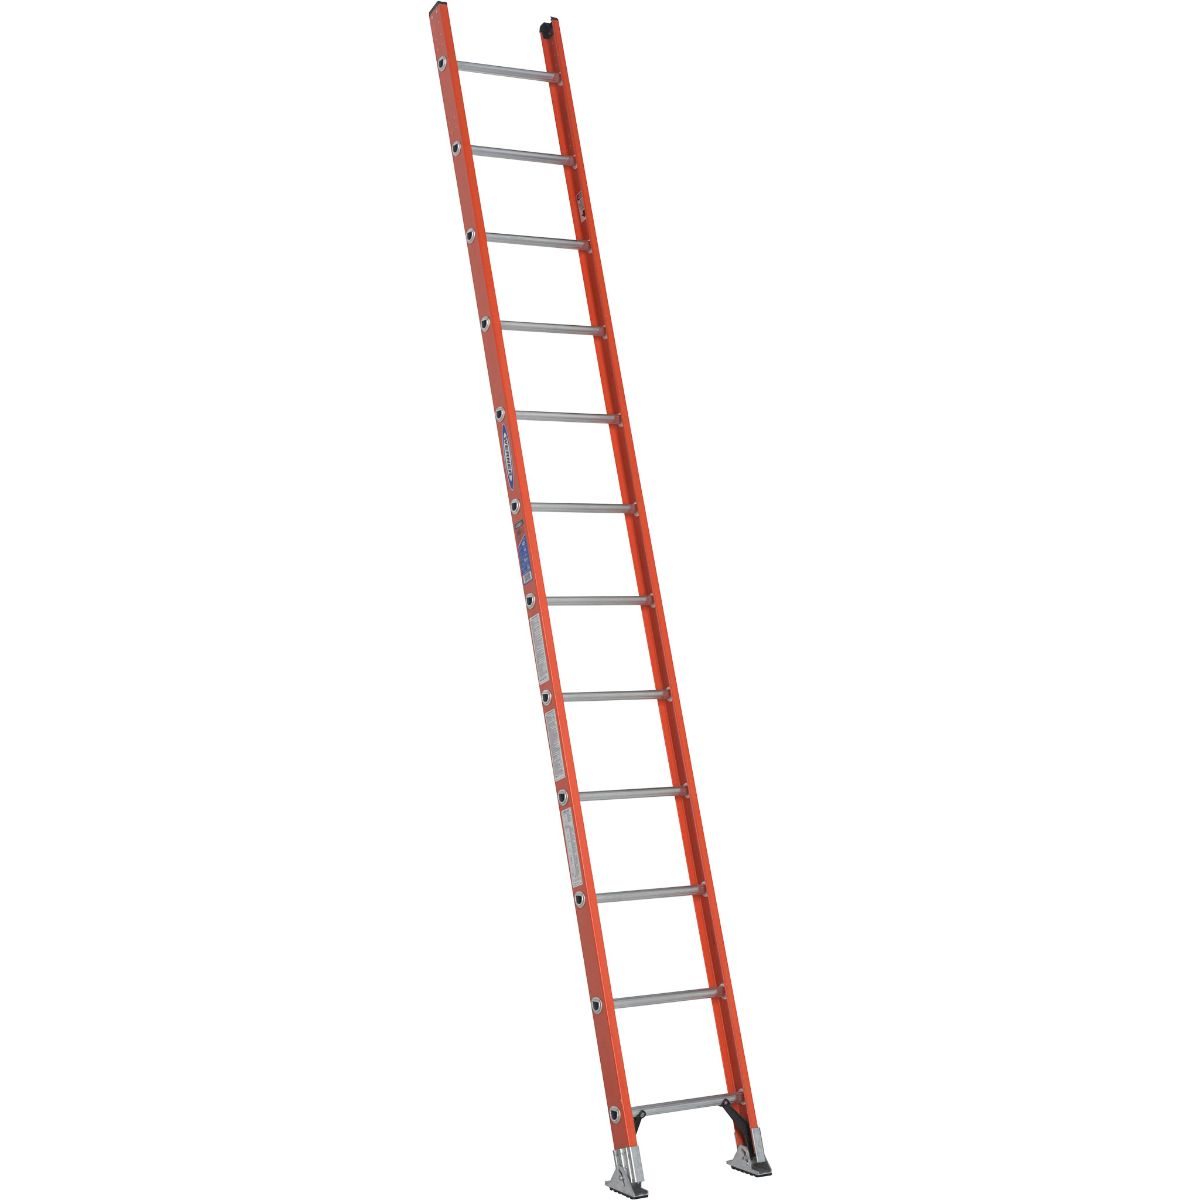 D6212-1 12 Ft. Type Ia Fiberglass D-rung Straight Ladder